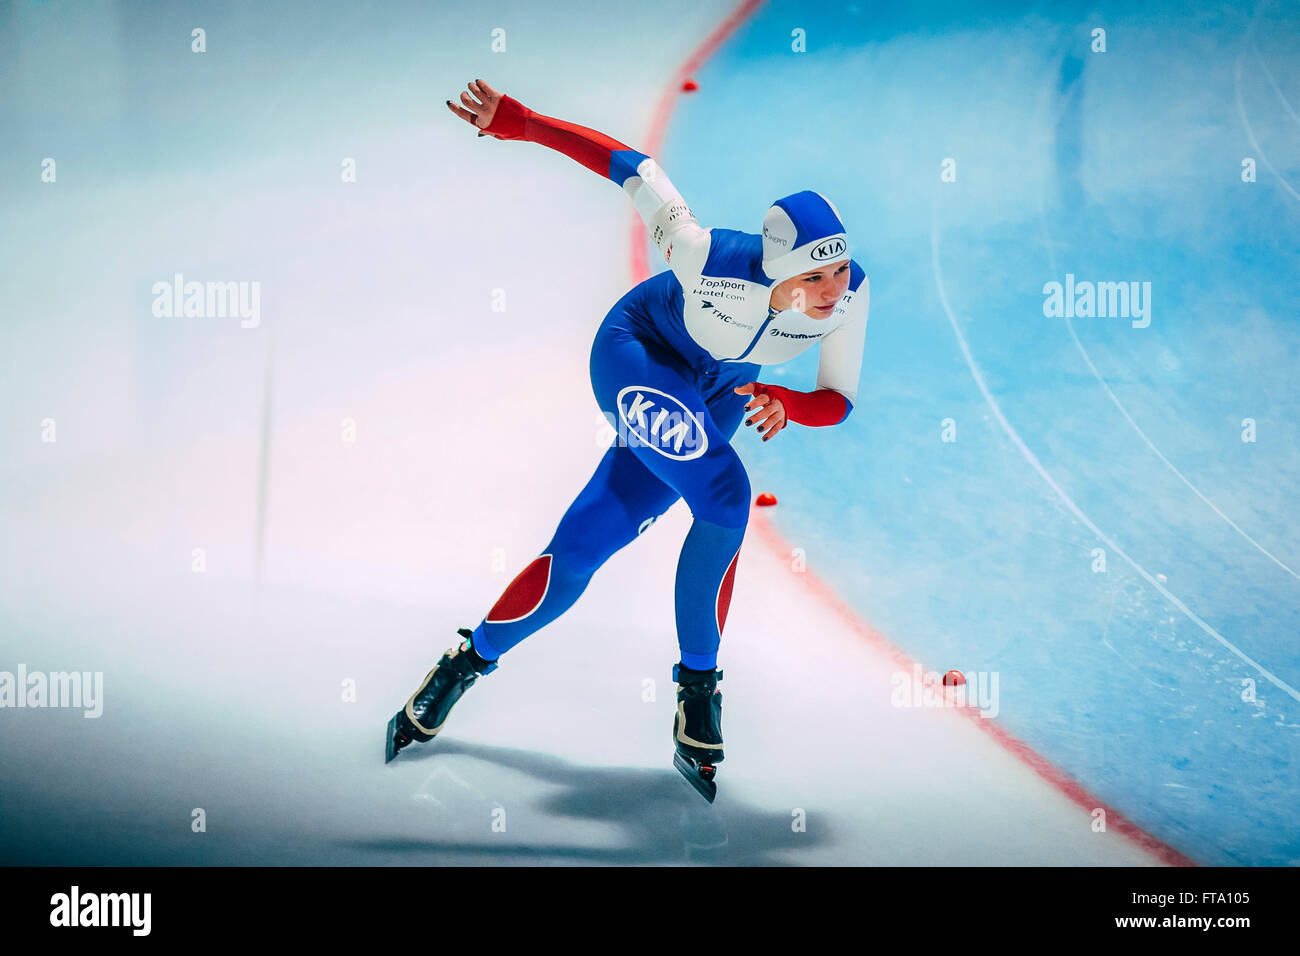 Chelyabinsk, Rusia - Octubre 15, 2015: chica de patinadores de velocidad se ejecuta un giro en el hielo durante la Copa de Rusia en el patinaje de velocidad Foto de stock